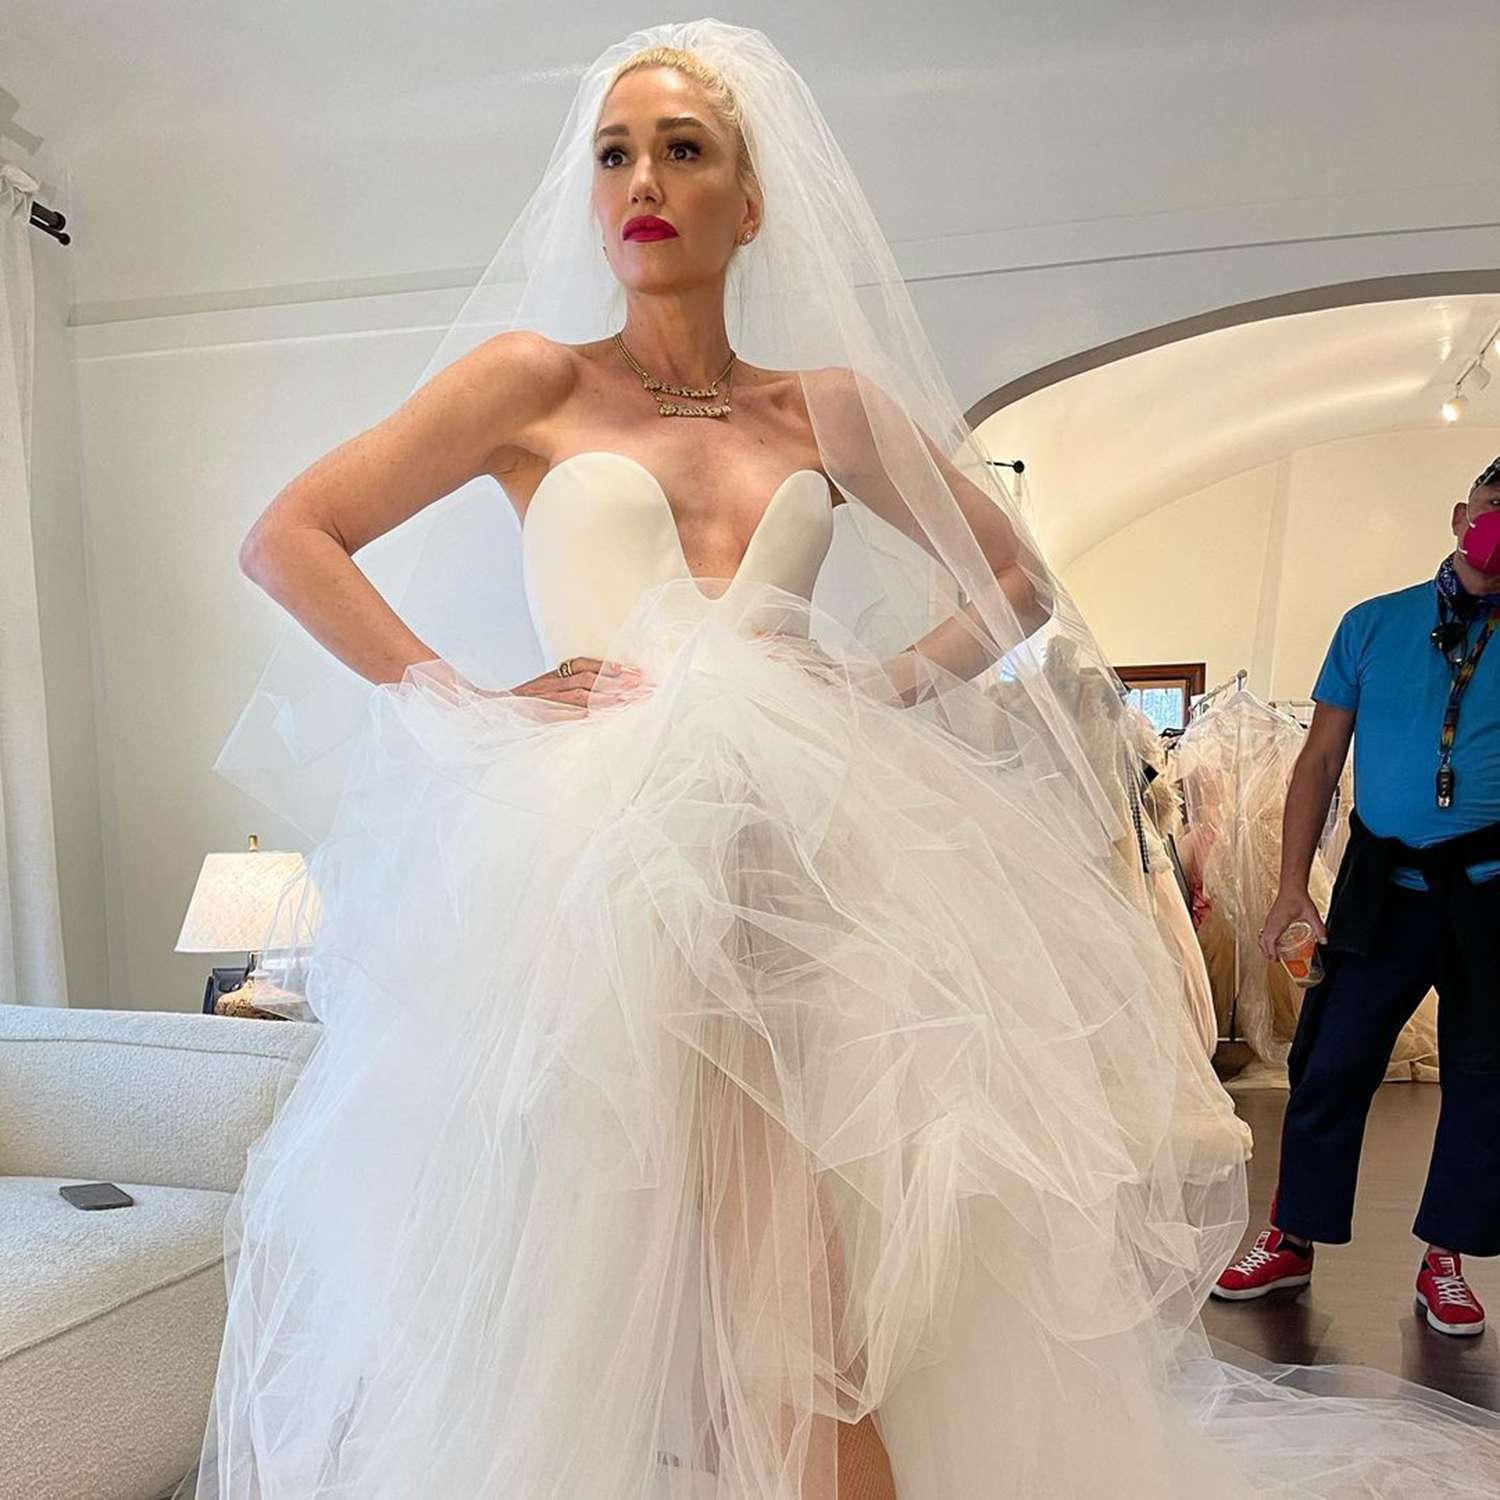 Gwen Stefani comparte el momento emocional en el que 'dijo que sí' al vestido de novia antes de casarse con Blake Shelton